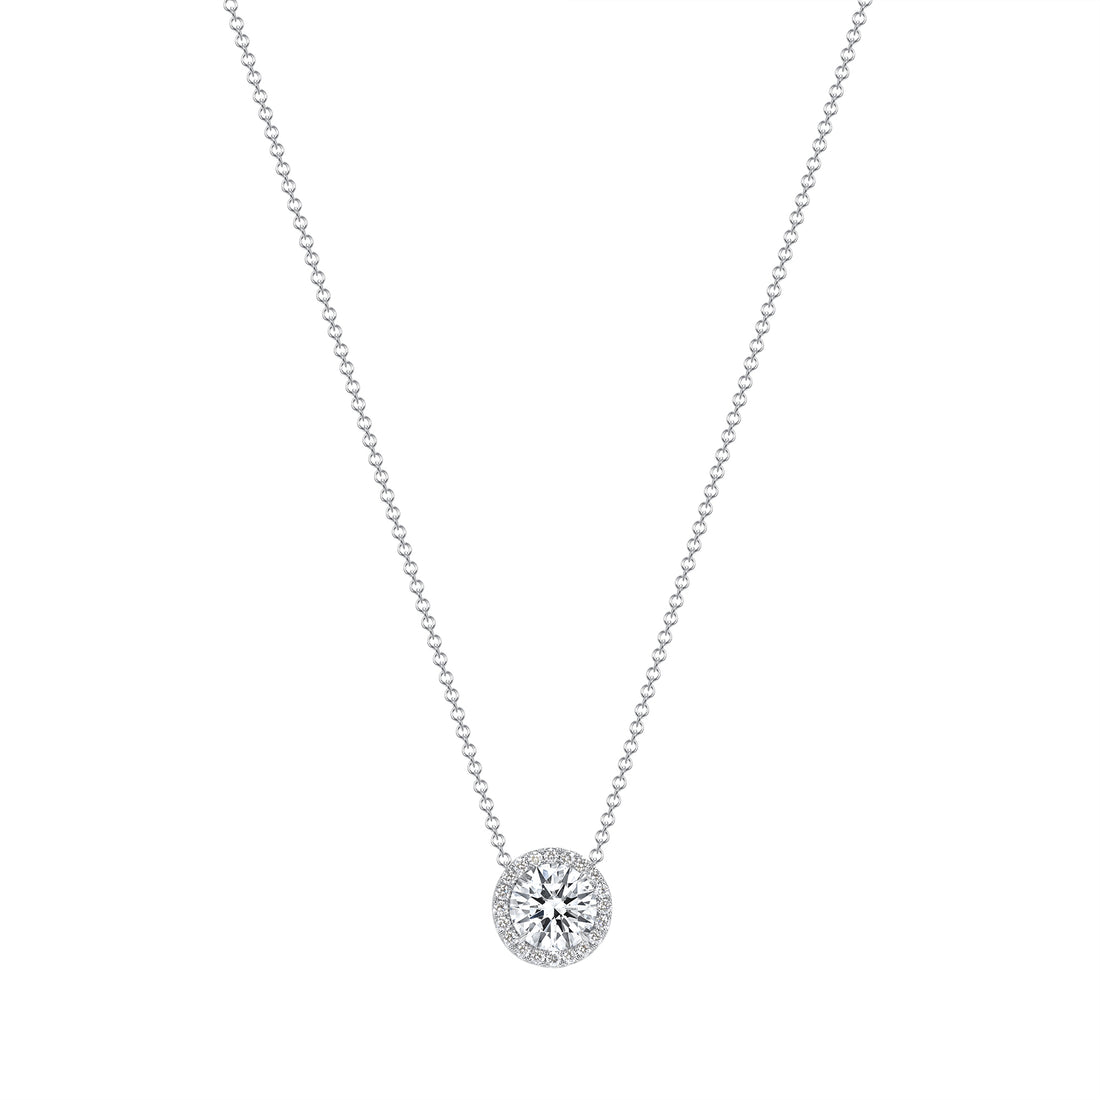 2.92 CT. Halo Round Brilliant Diamond Pendant Necklace in 14K White Gold